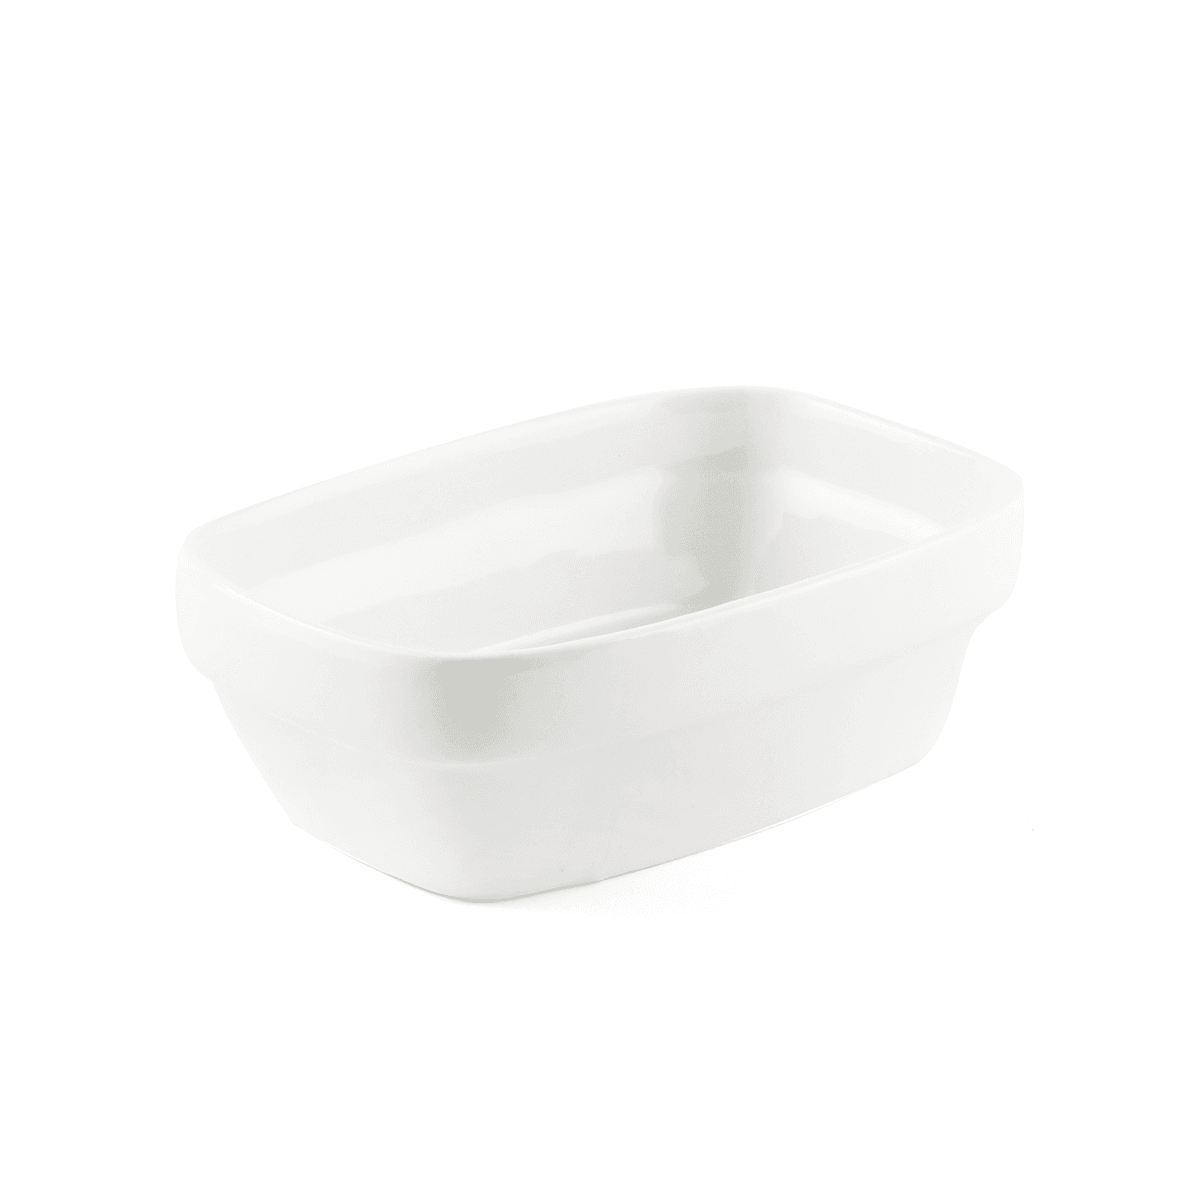 وعاء مستطيل بورسلين بني عاجي 14 سم ب2ب B2B Ivory Porcelain Ivory Rectangular Bowl